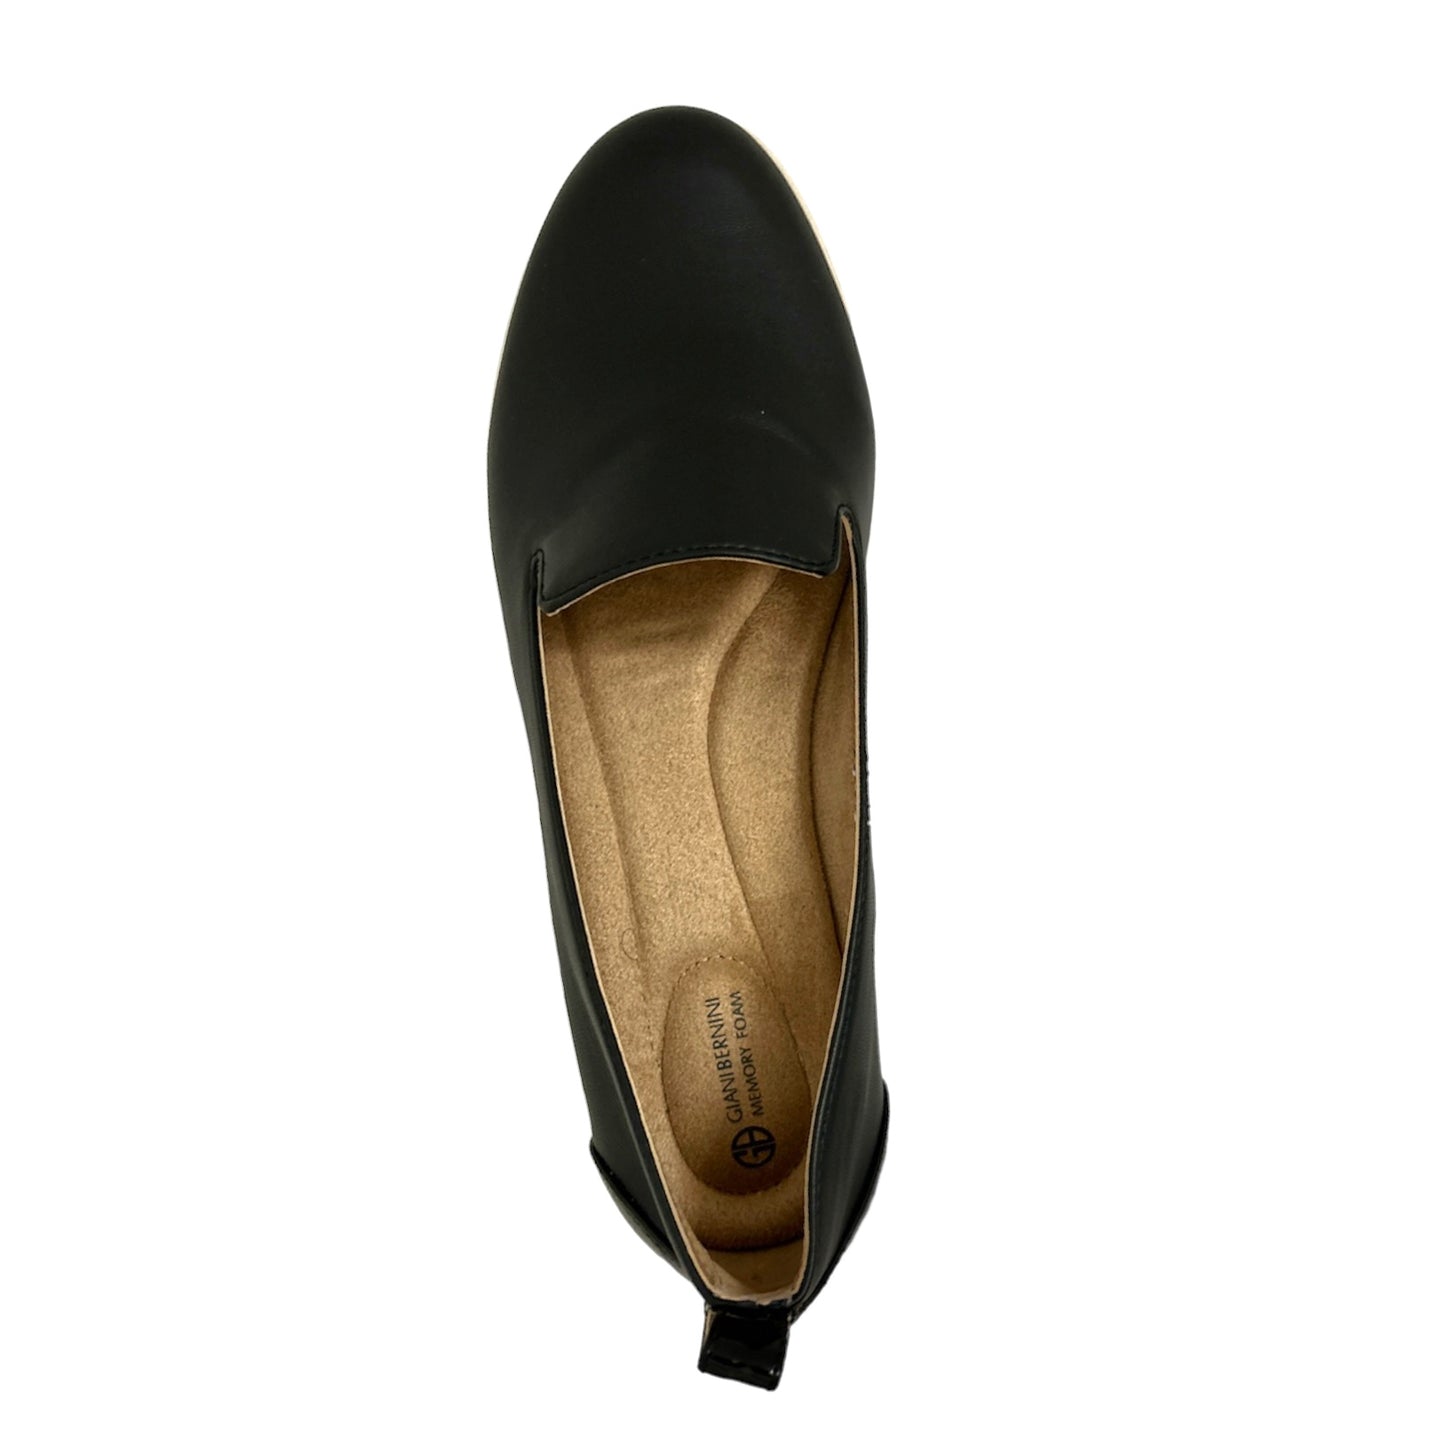 BILLIEP Memory Foam Slip-On Flats Loafers Women's Shoes